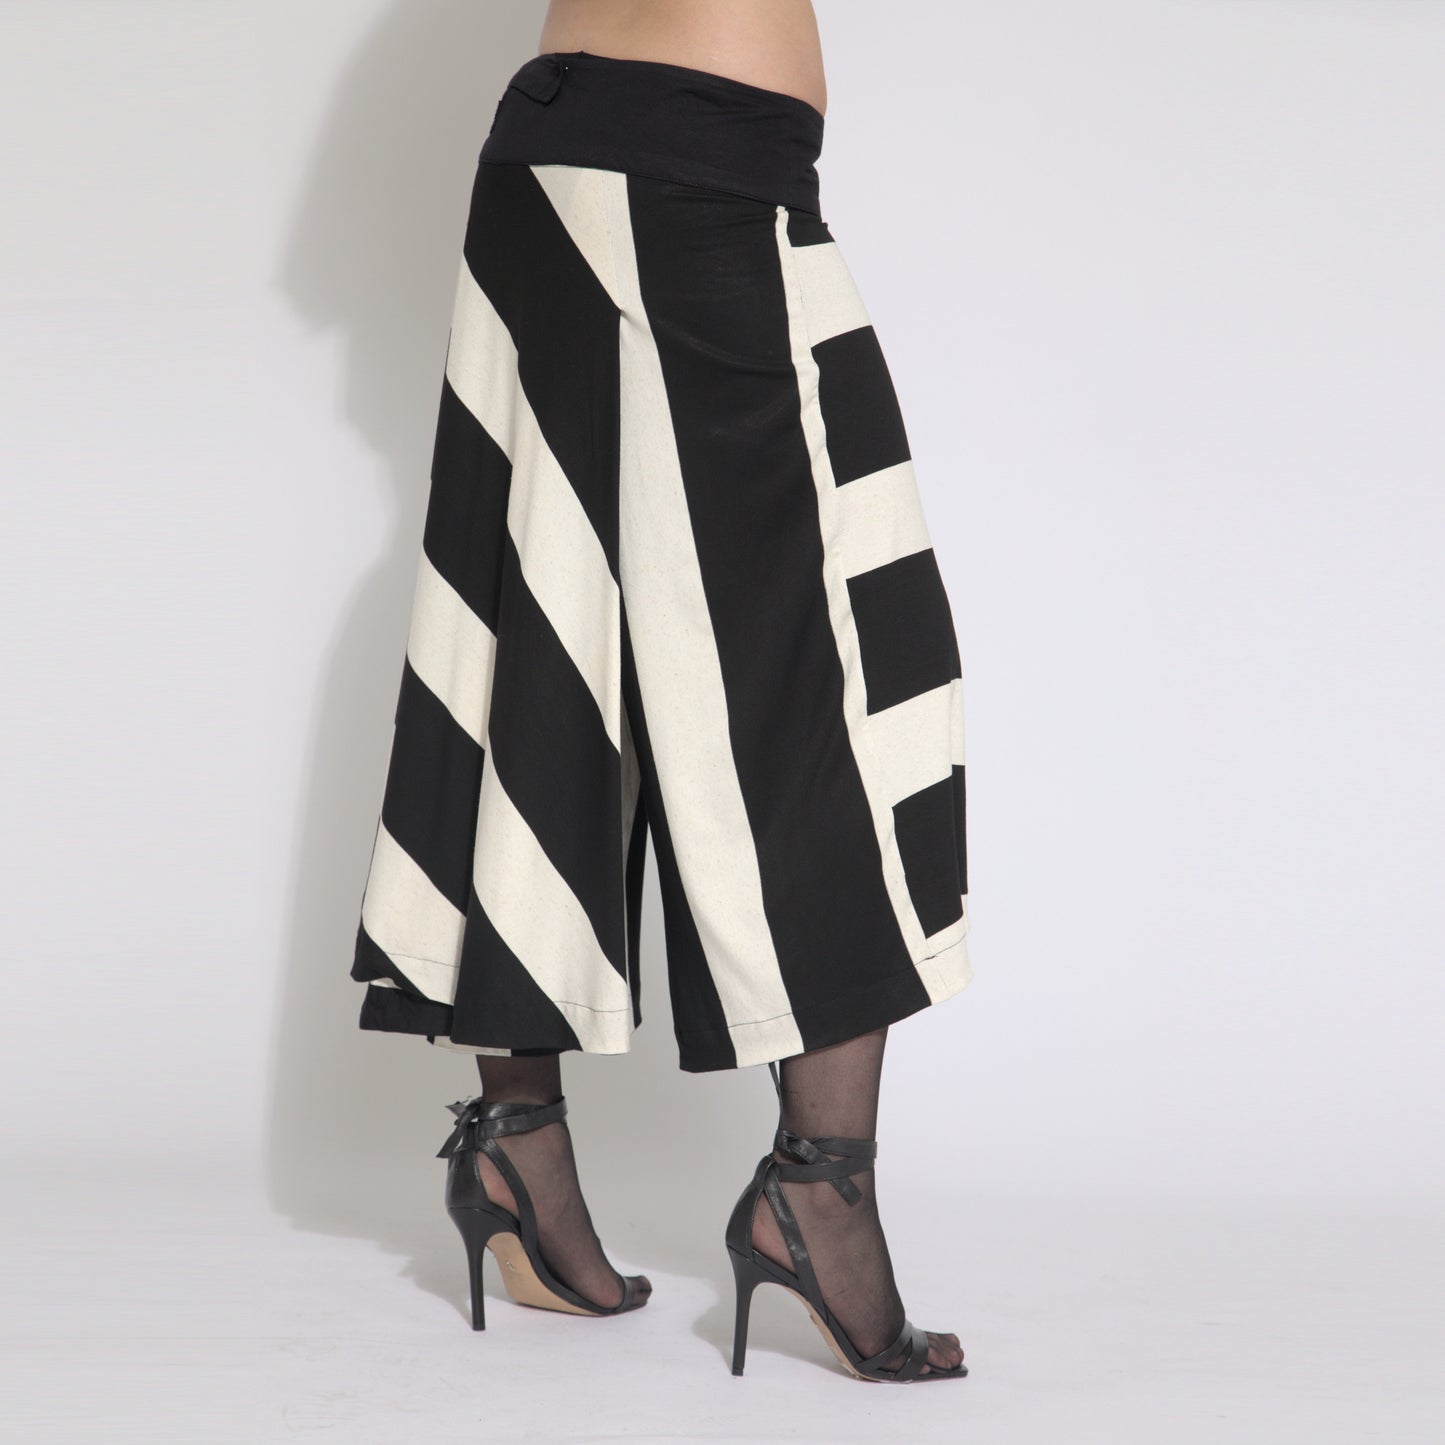 Sienna – saia calça listrada de preto e branco